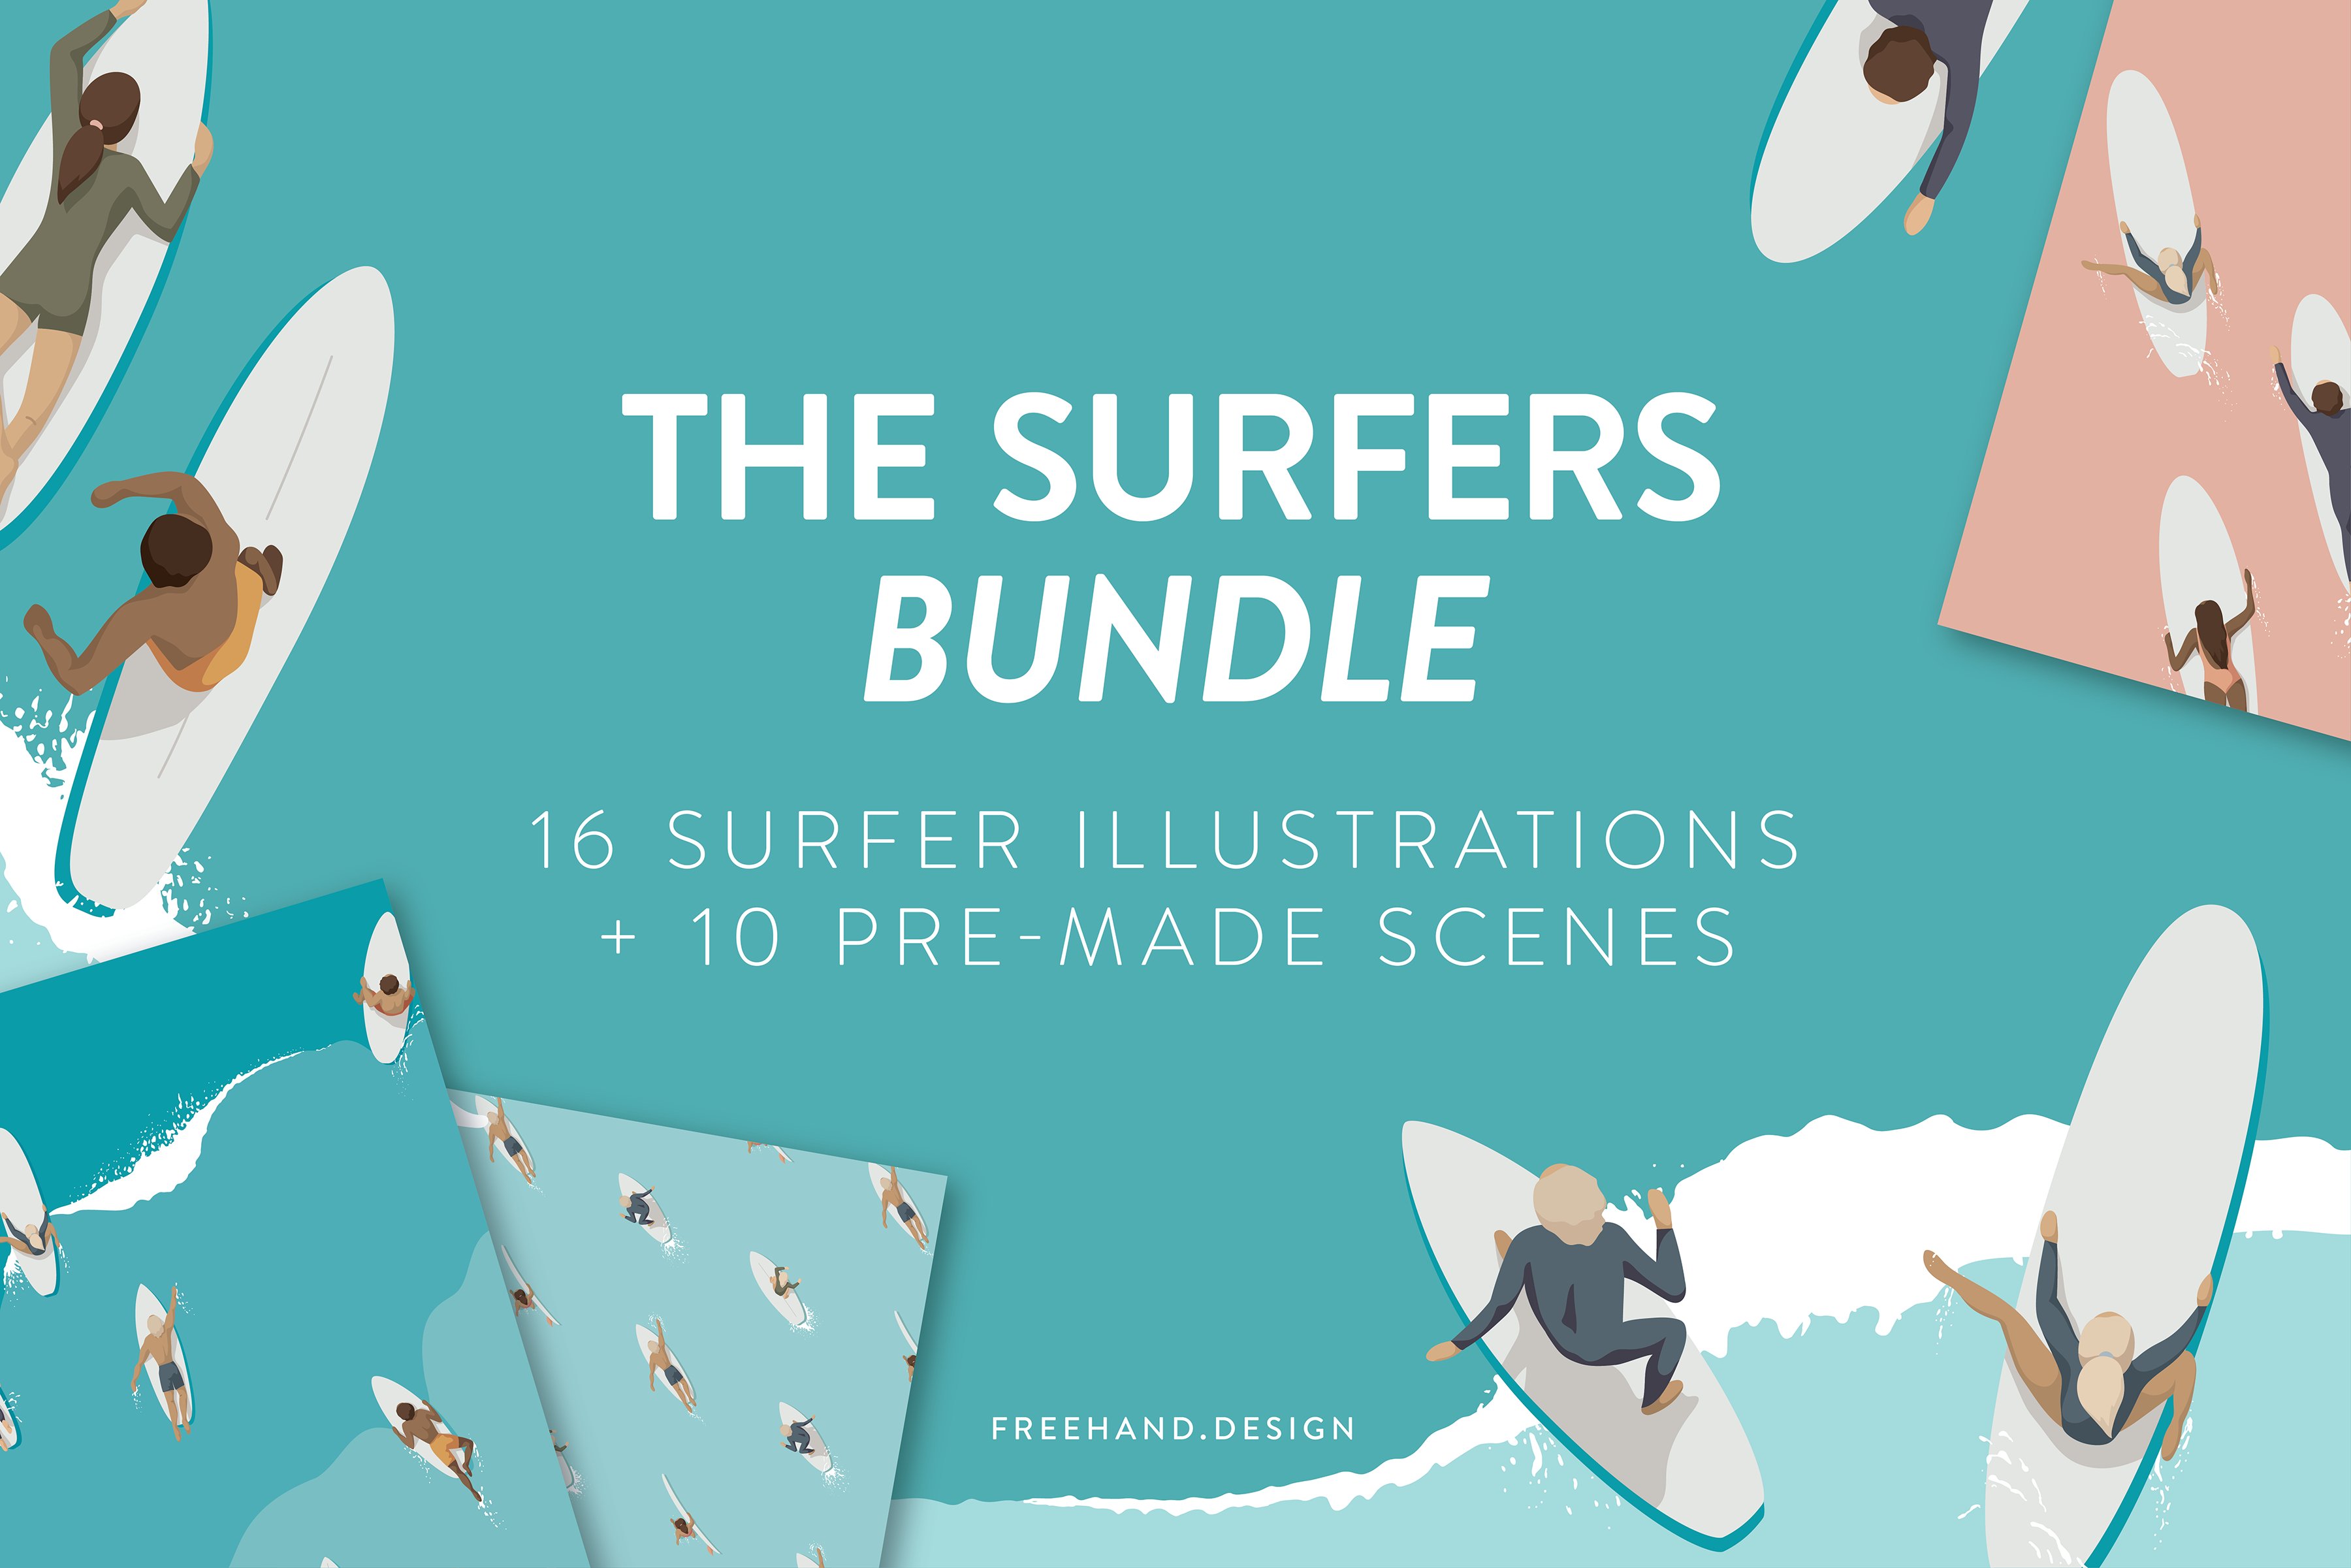 Surfer Illustrations - BUNDLE cover image.